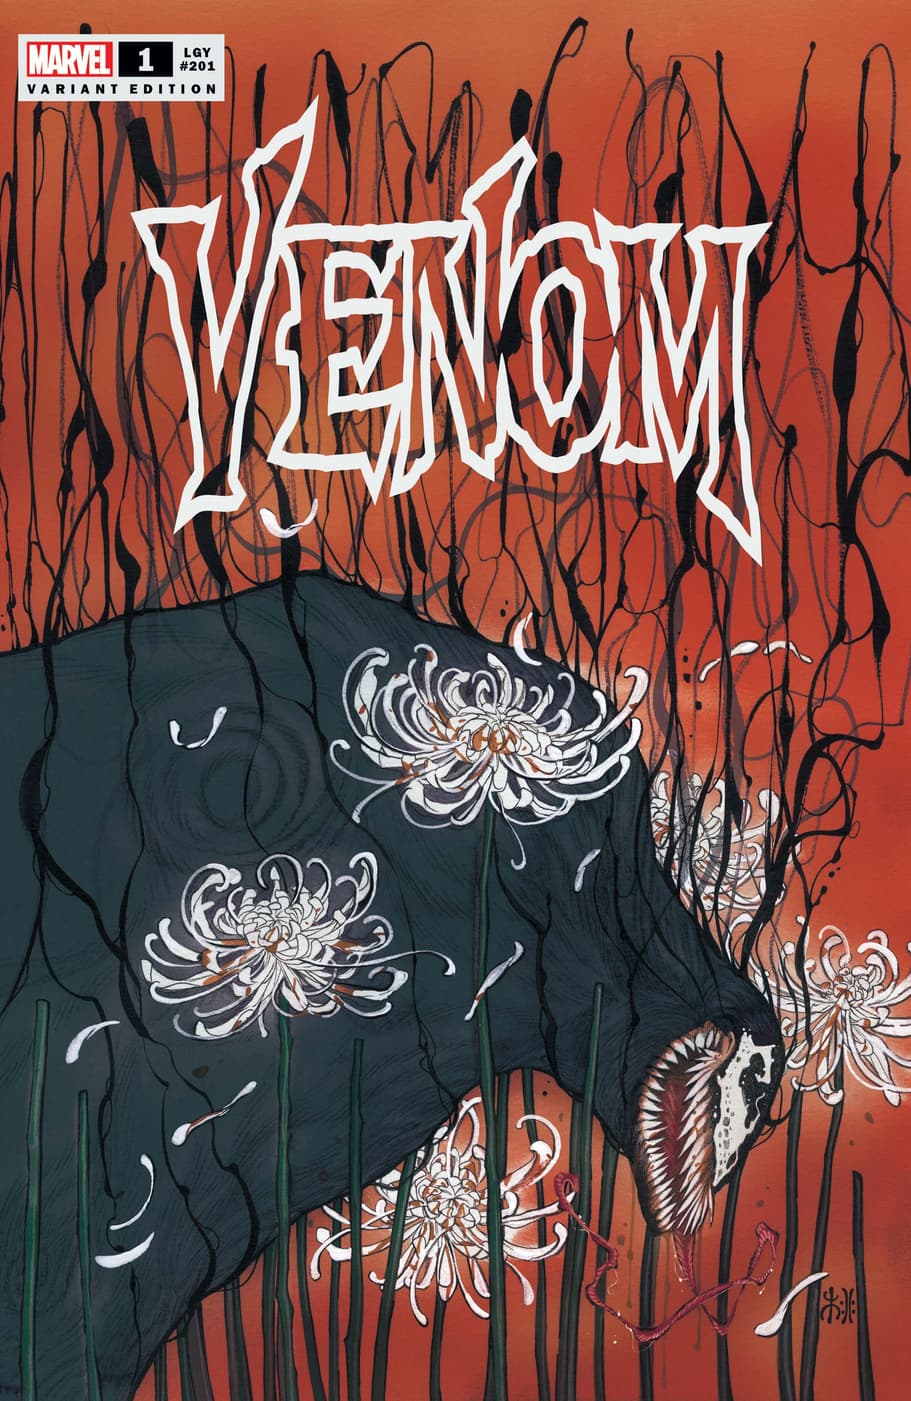 VENOM #1 variant cover by Peach Momoko